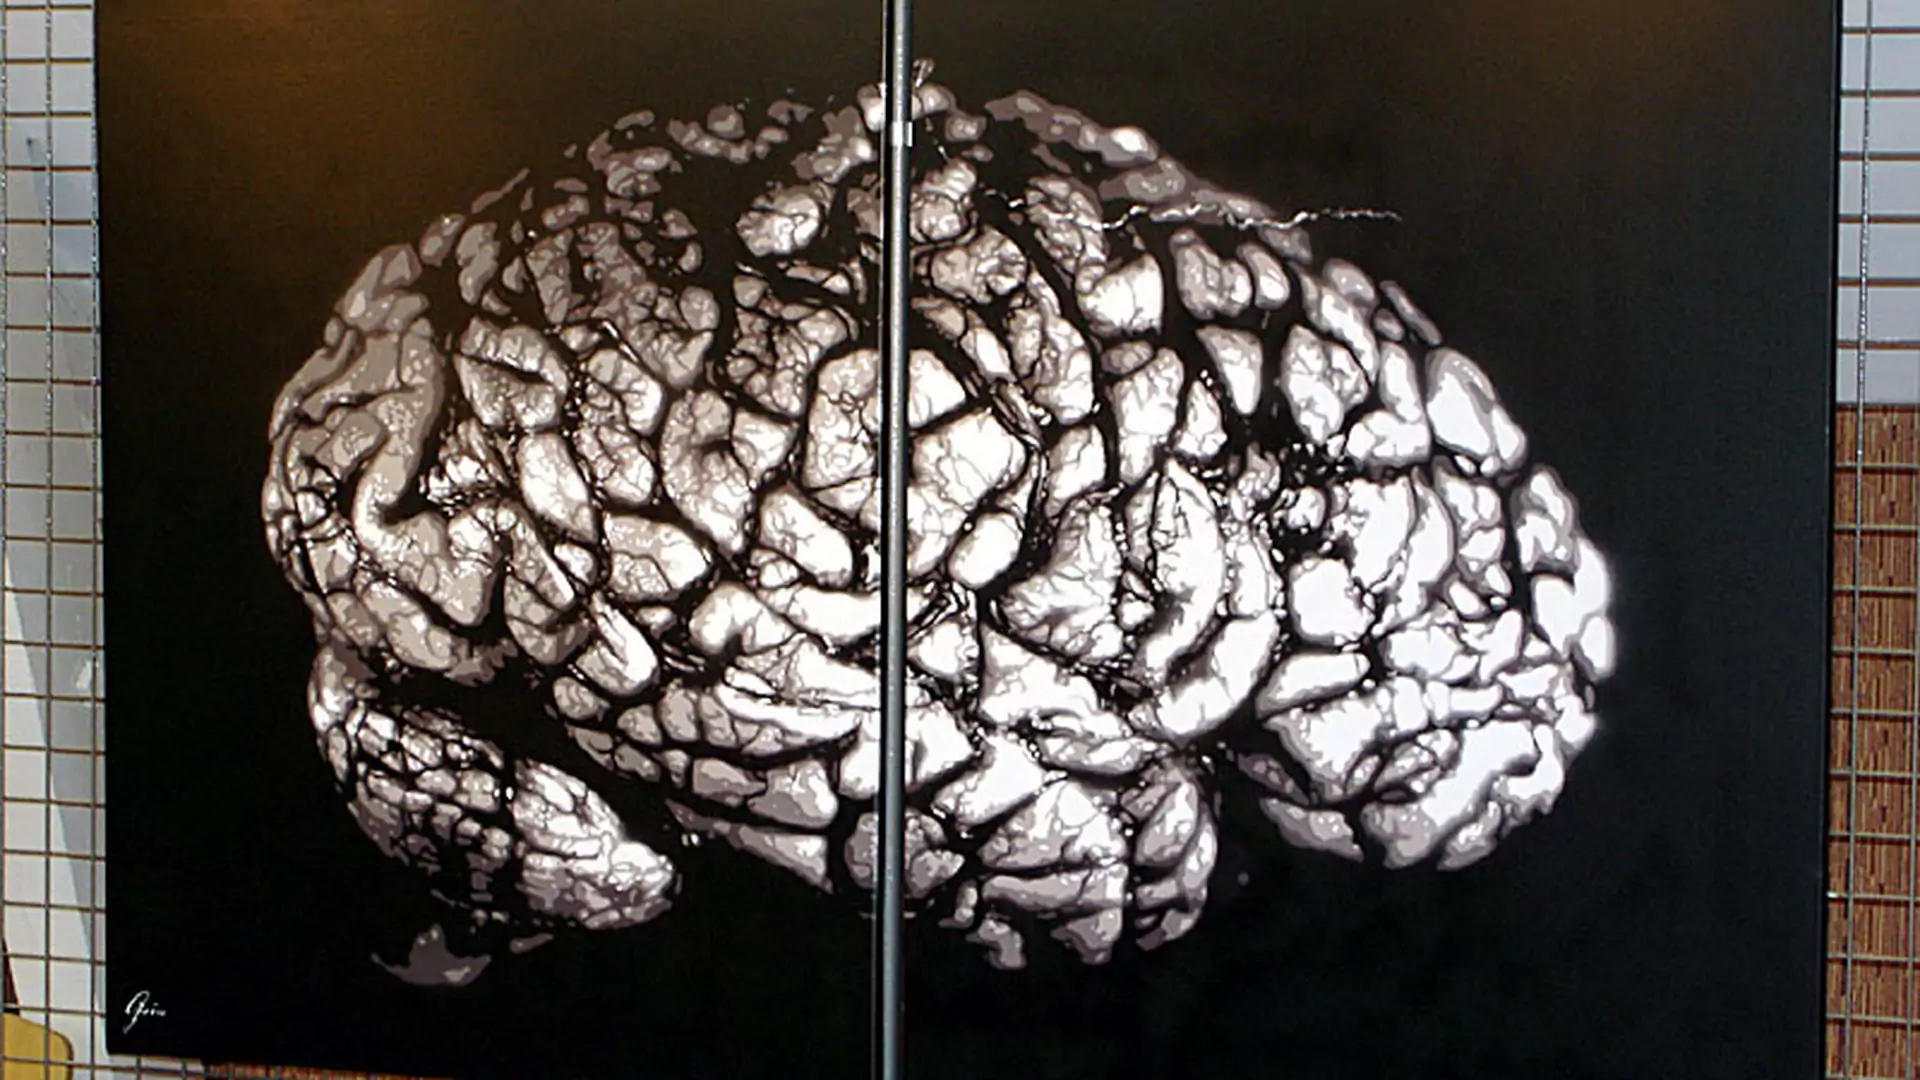 W jaki sposób fałduje się mózg? Naukowcy zaskoczeni wynikami eksperymentu